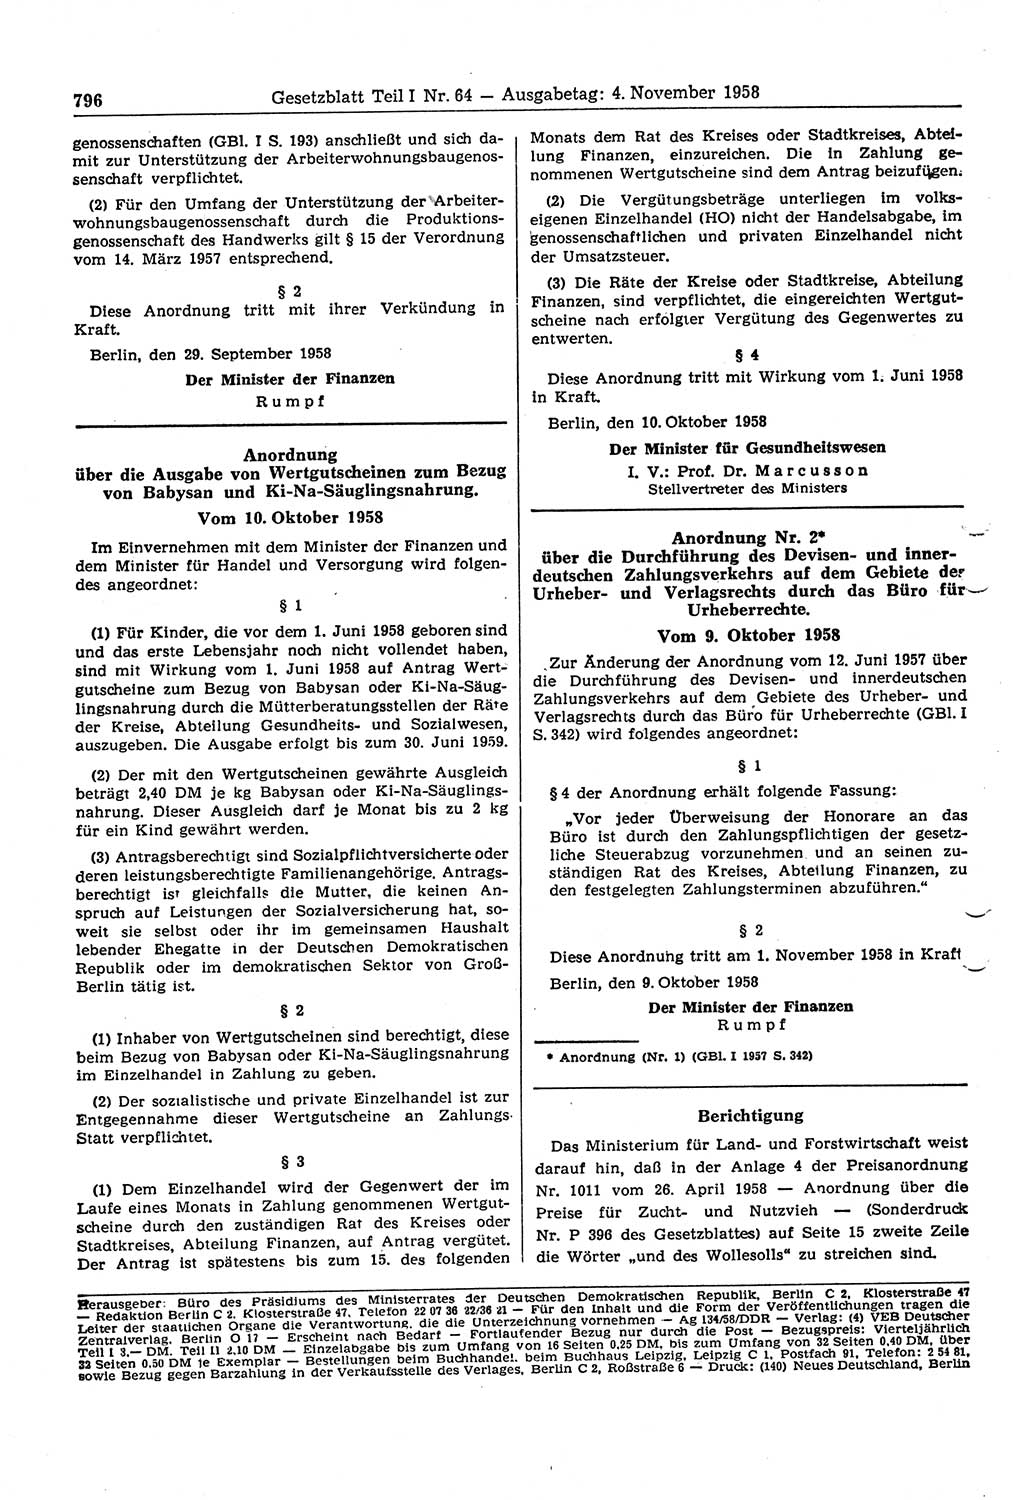 Gesetzblatt (GBl.) der Deutschen Demokratischen Republik (DDR) Teil Ⅰ 1958, Seite 796 (GBl. DDR Ⅰ 1958, S. 796)